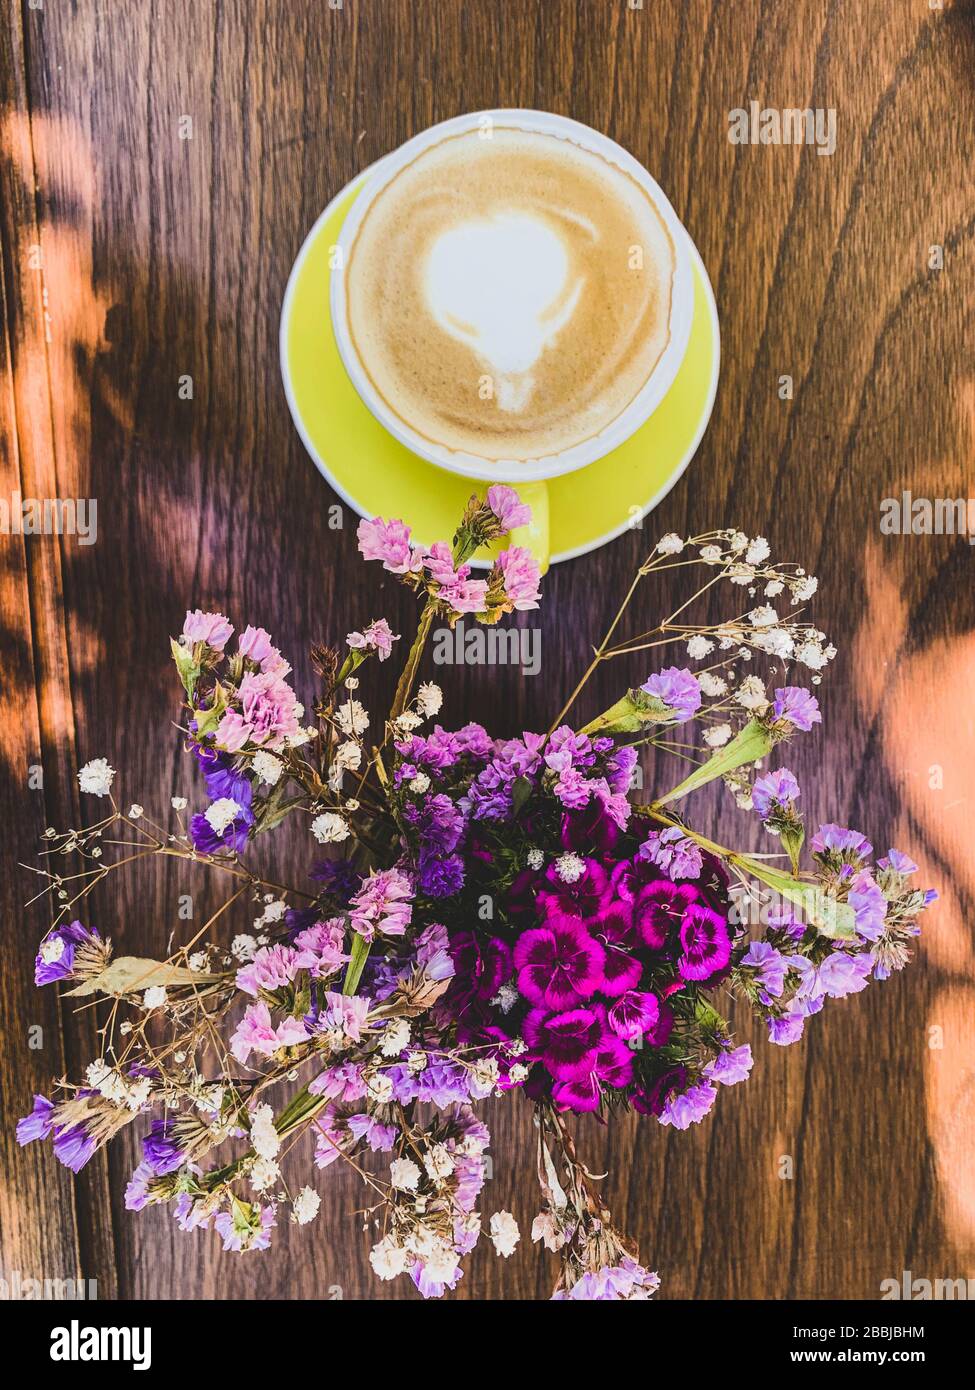 taza de cafe y postre sobre mesa de madera y flores Stock Photo